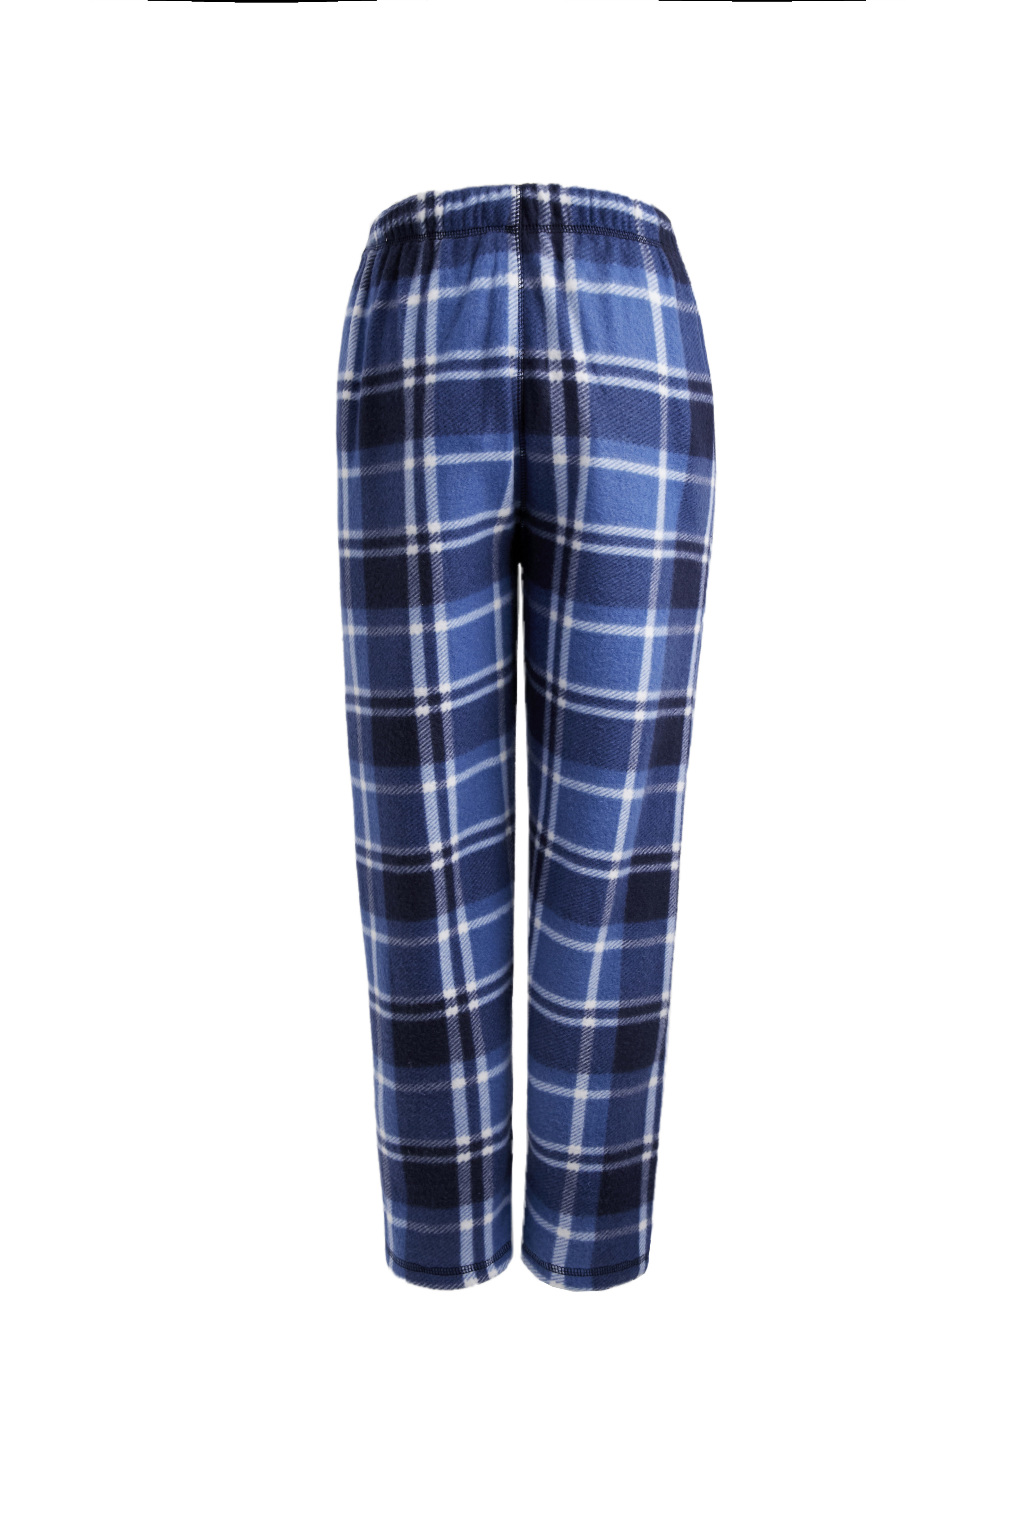 Wholesale Pajama Pants Wholesale Pajama Sets Winter Pajamas Winter